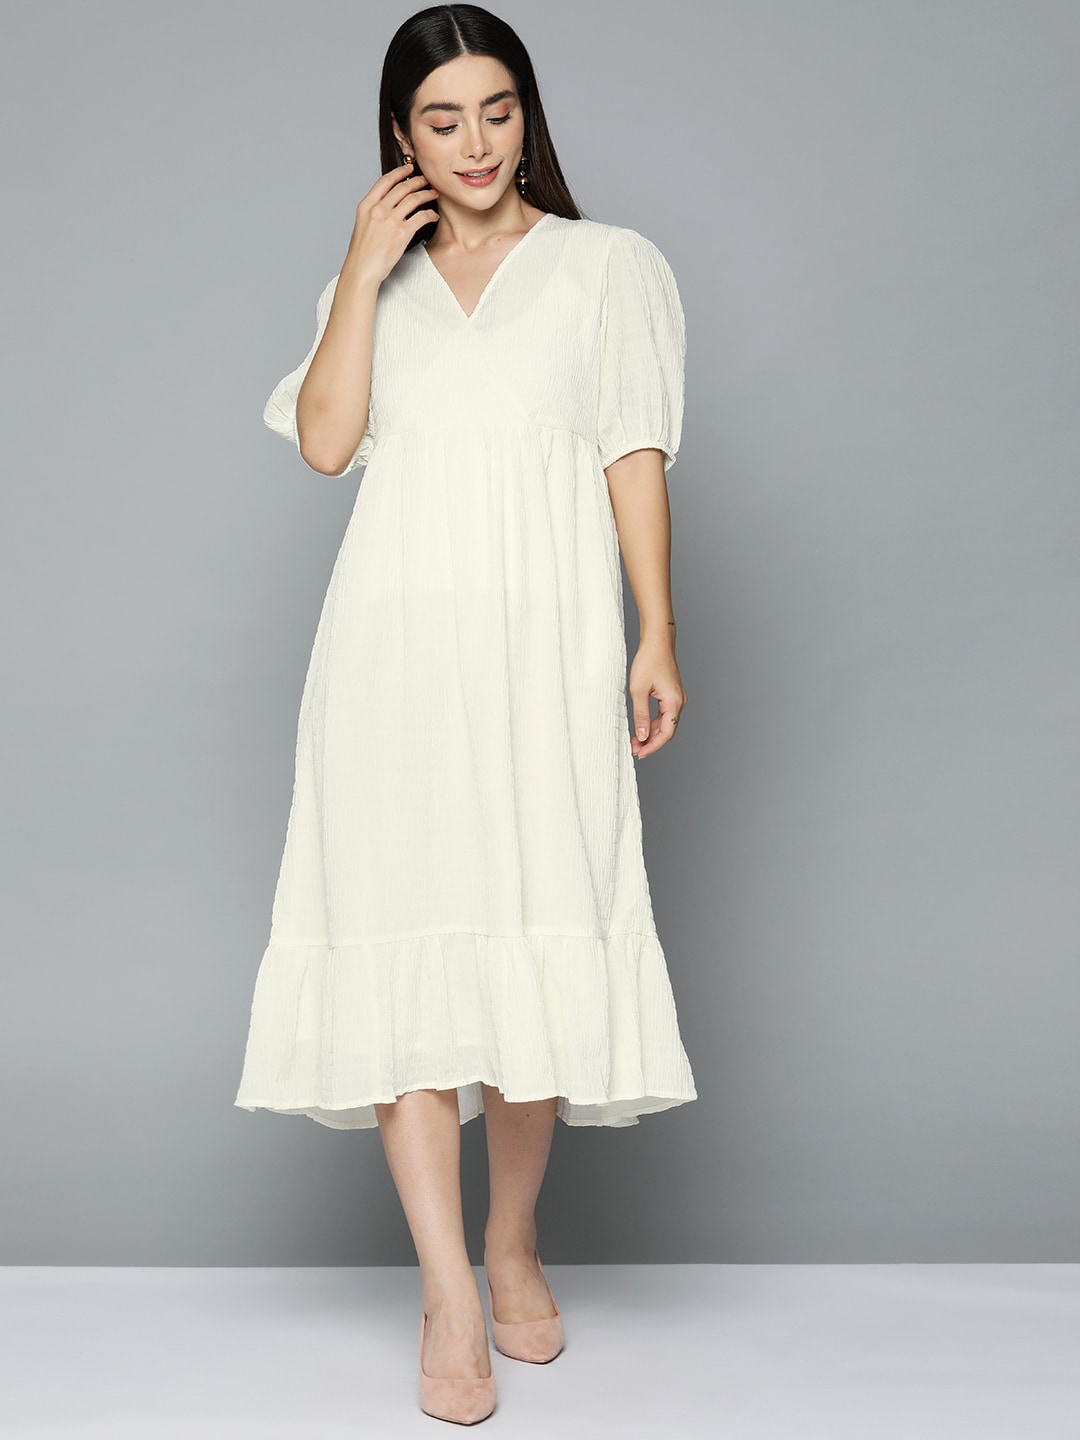 Femella Off White Wrap Textured Chiffon Midi Dress Price in India